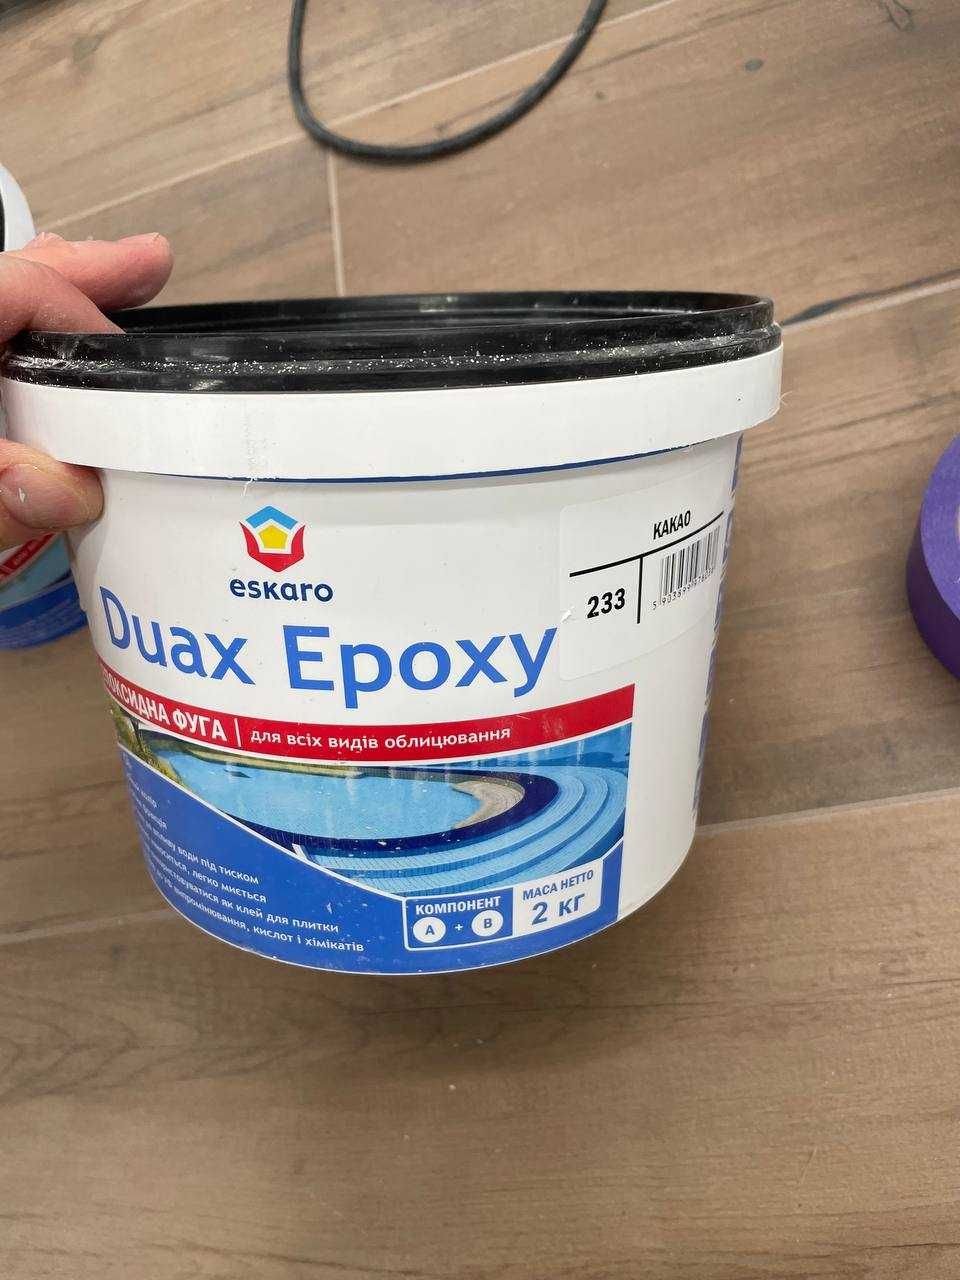 Затирка эпоксидная Duax Epoxy - белый, серый, дерево, какао